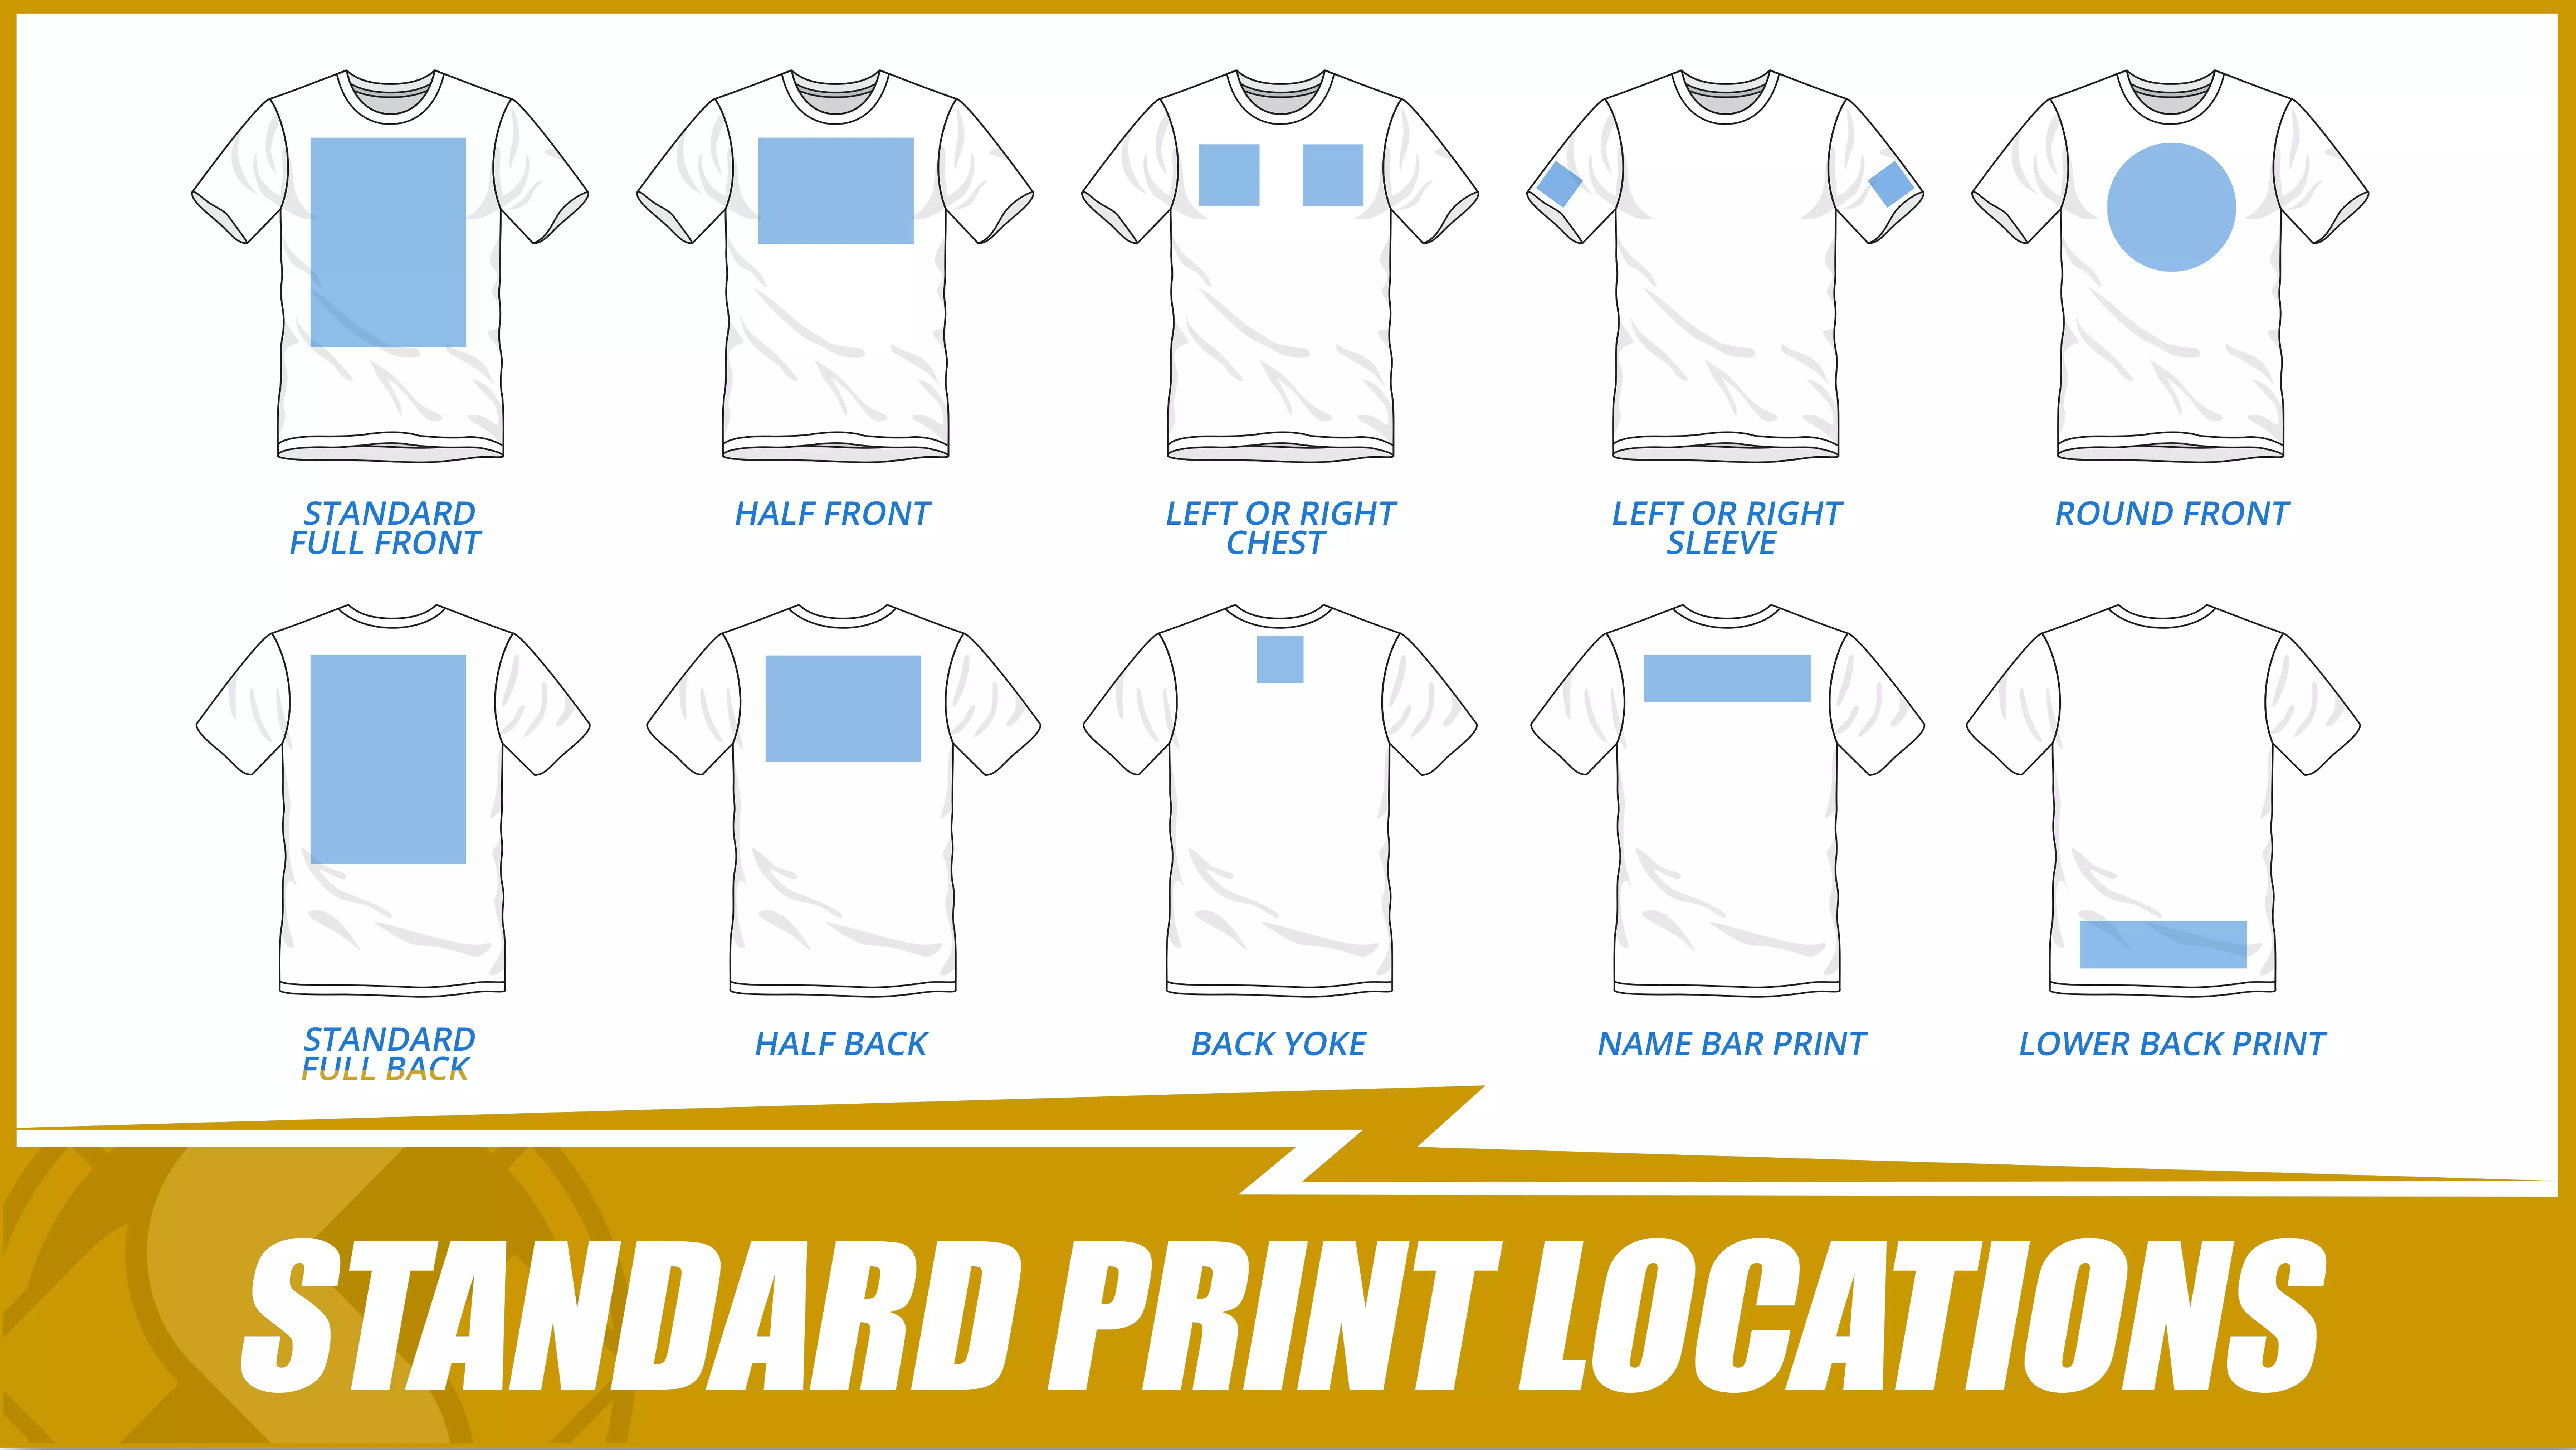 Standard print locations